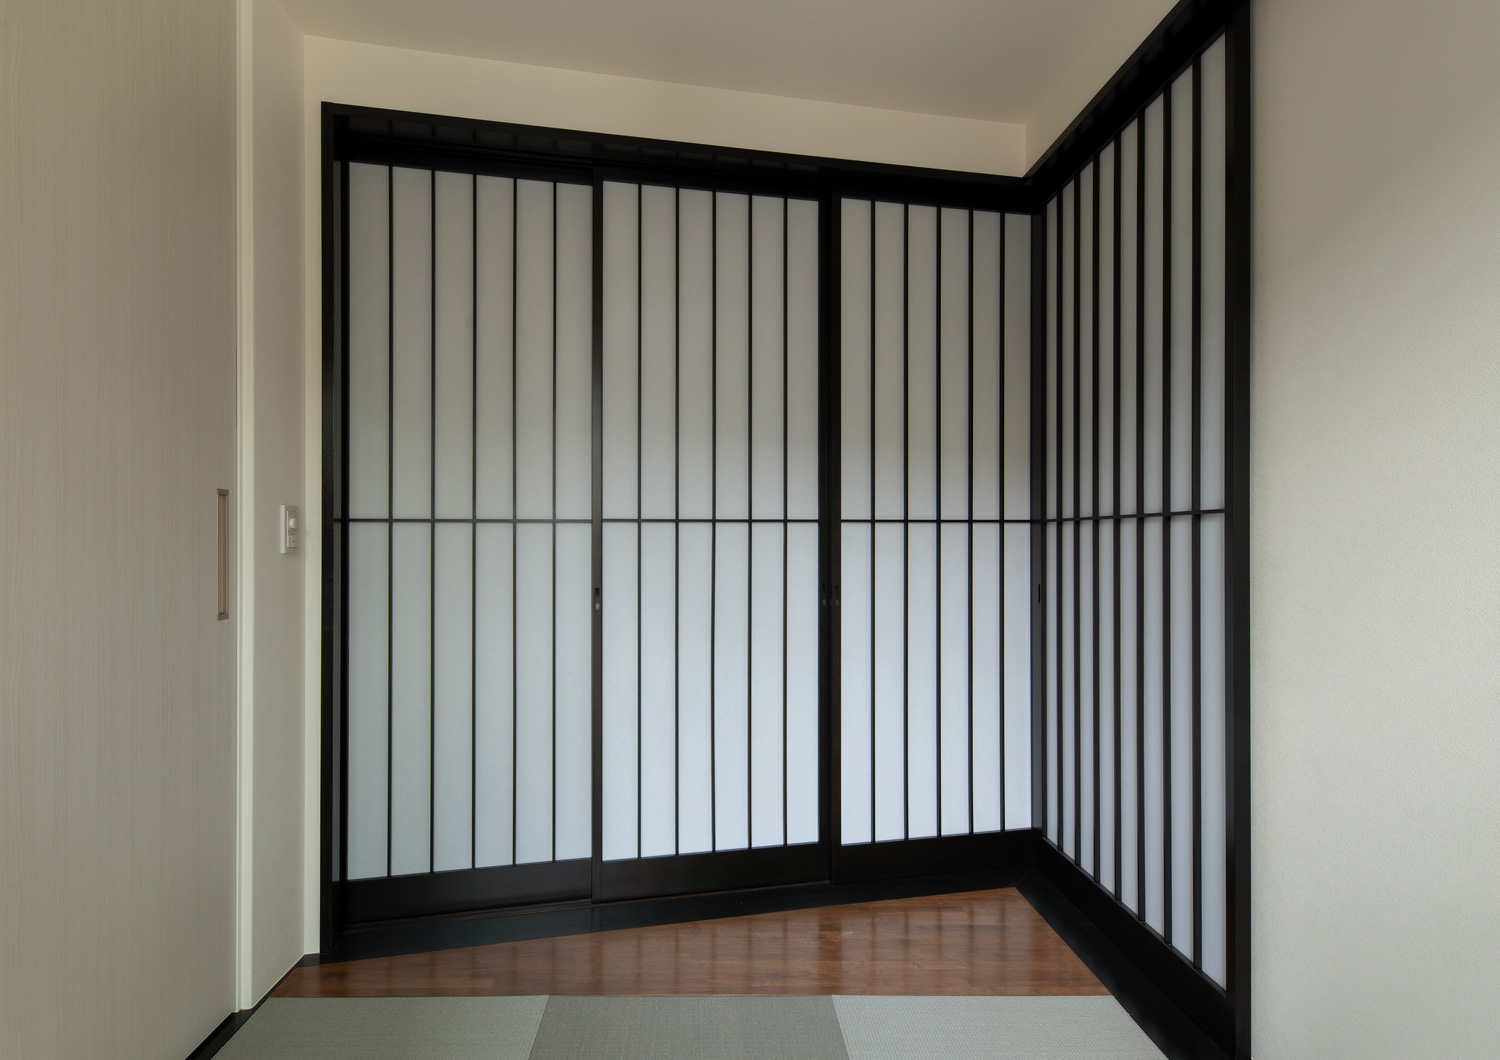 琉球畳の和室を仕切る黒枠の障子・デザイン住宅